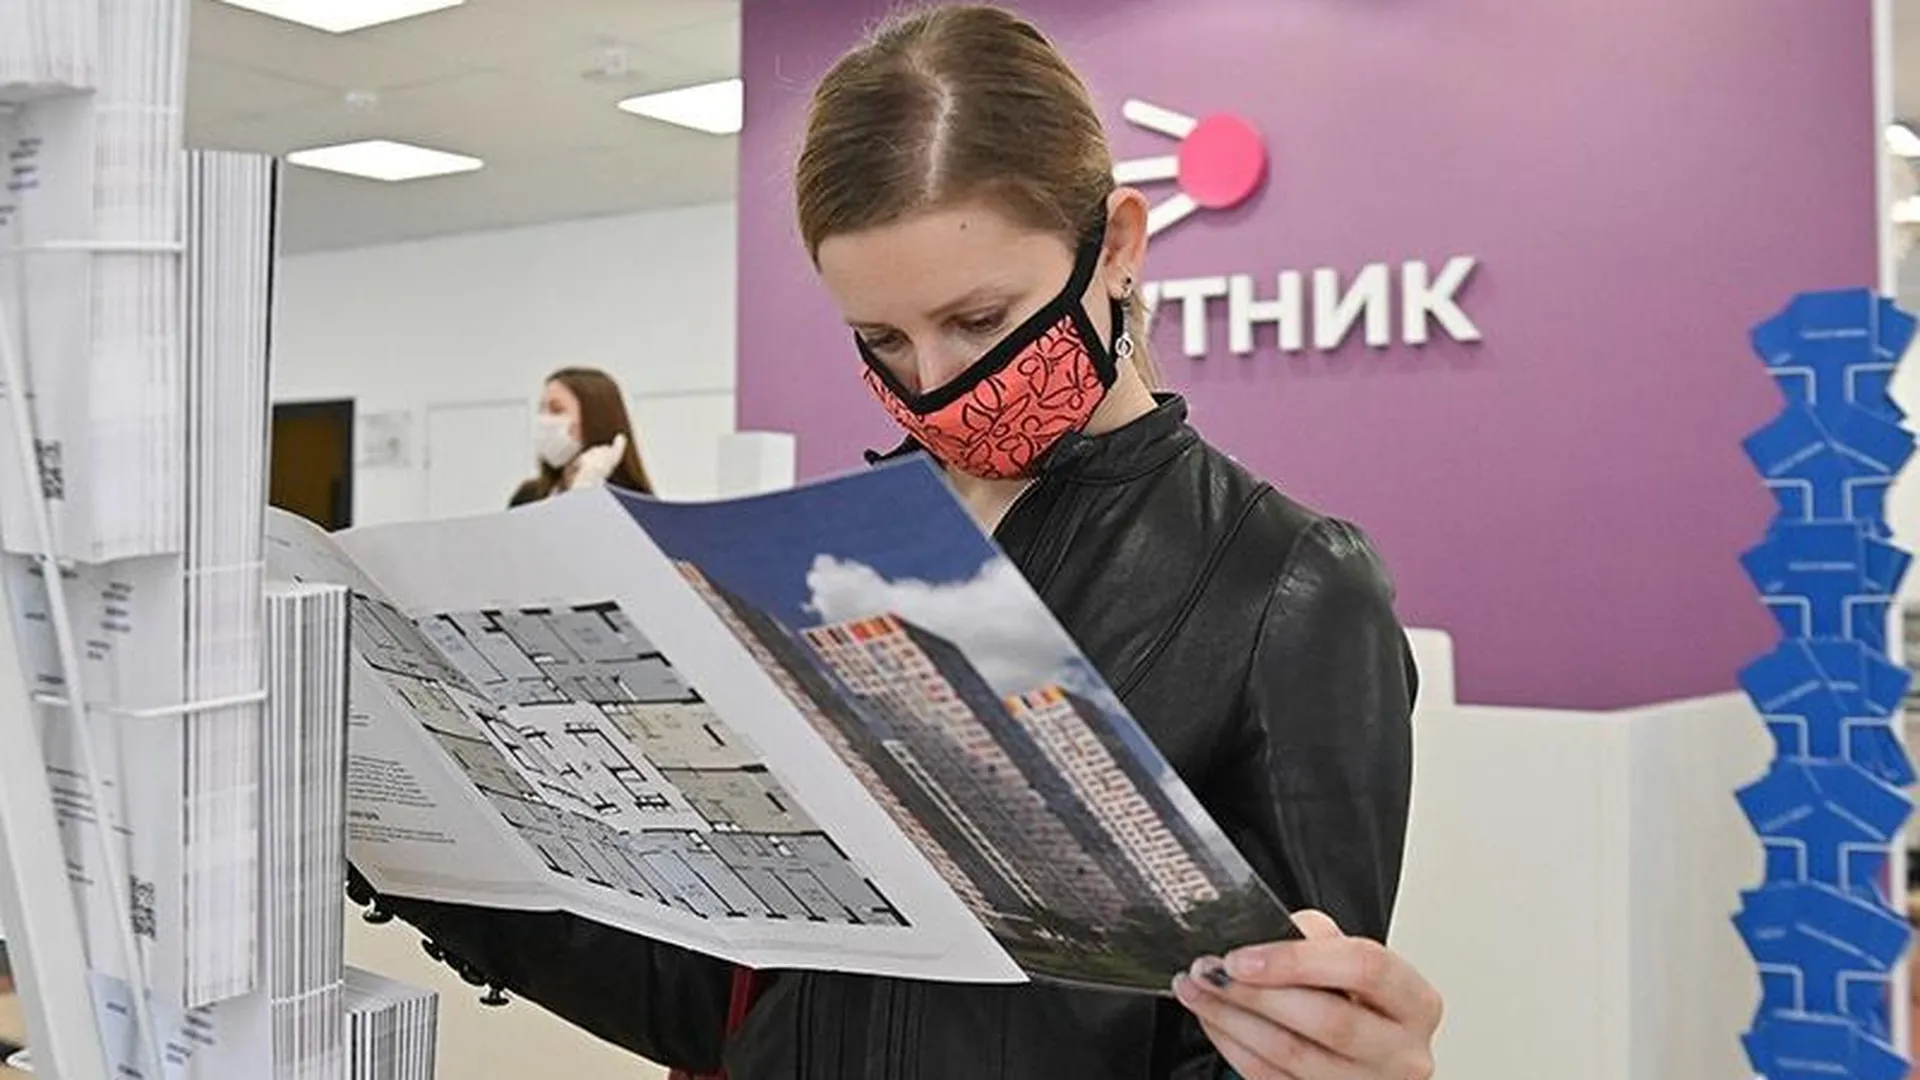 В Красногорске и Одинцово открылись офисы продаж недвижимости, они могут принимать по 12 человек в день 